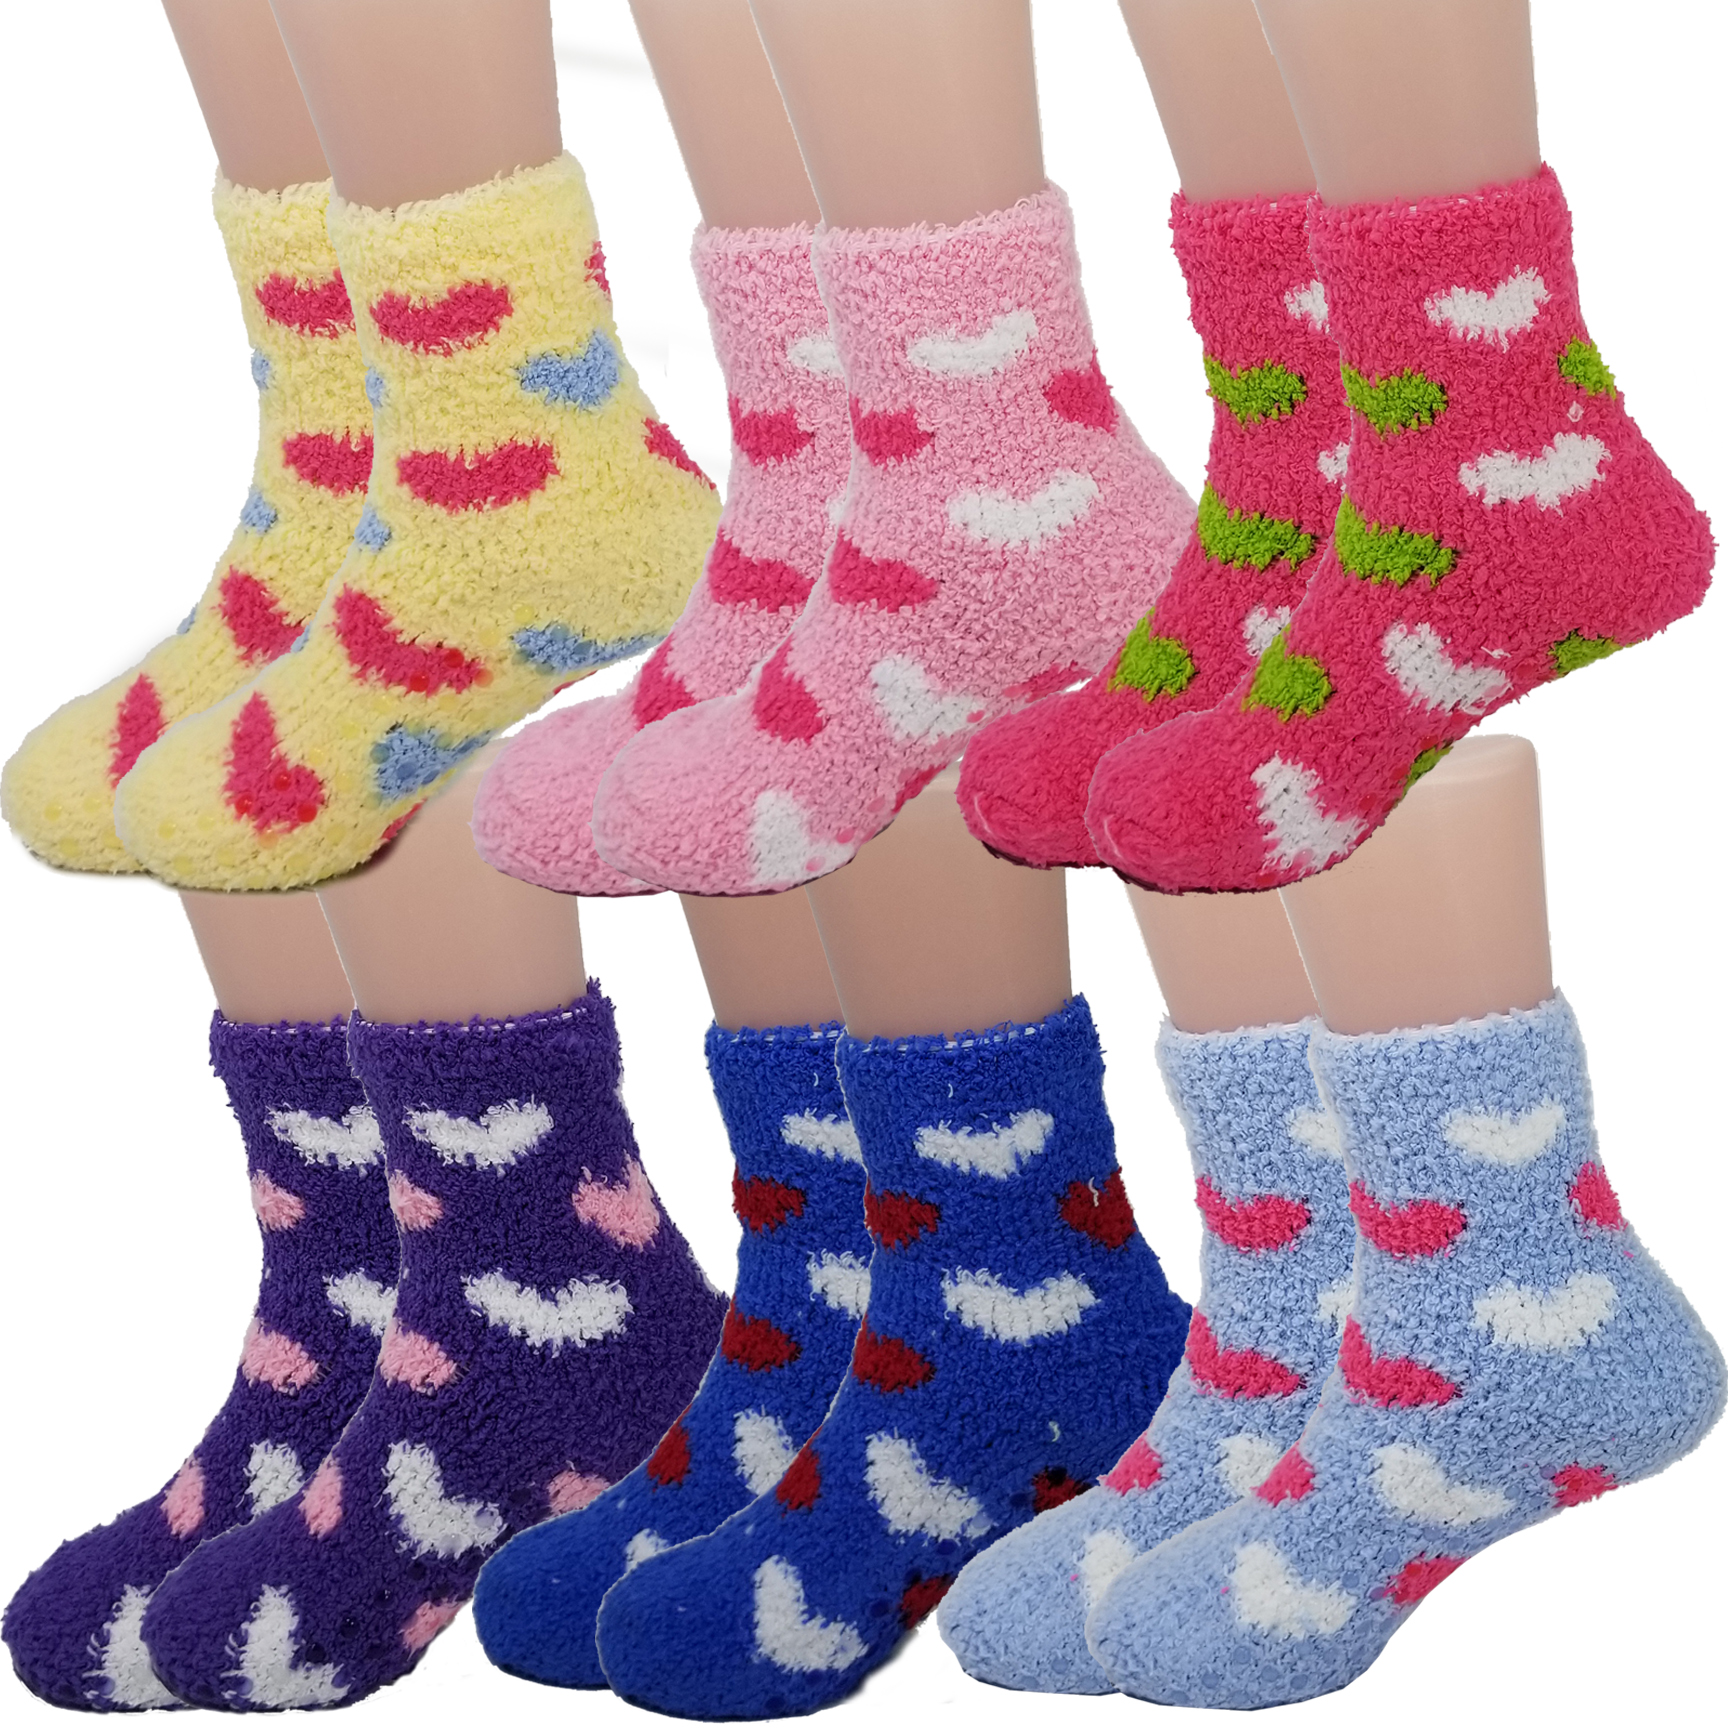 Debra Weitzner Warm Fuzzy Socks for 